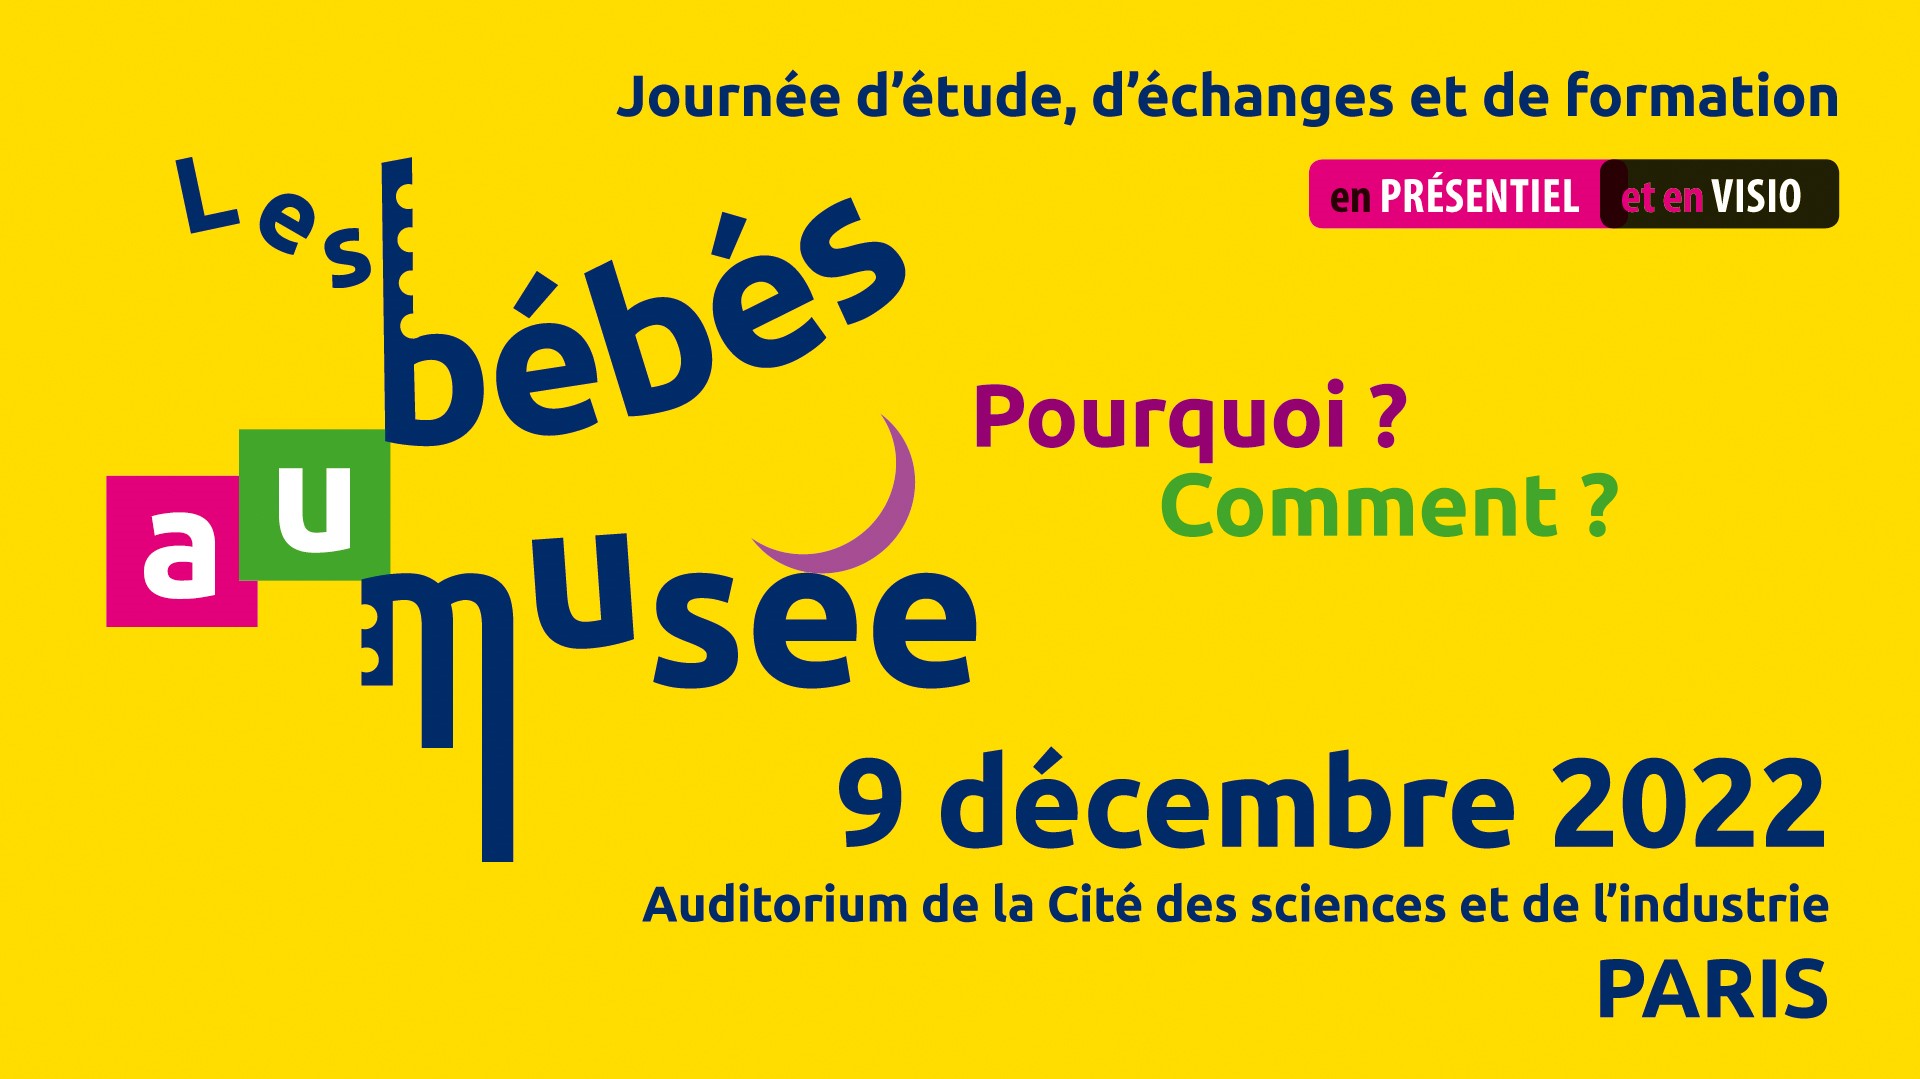 Les bébés au musée journée d'étude, d'échanges et de formation organisée par les editions ERES, accueillie à l'auditorium d ela Cité des Sciences et de l'industrie le 9 décembre 2022